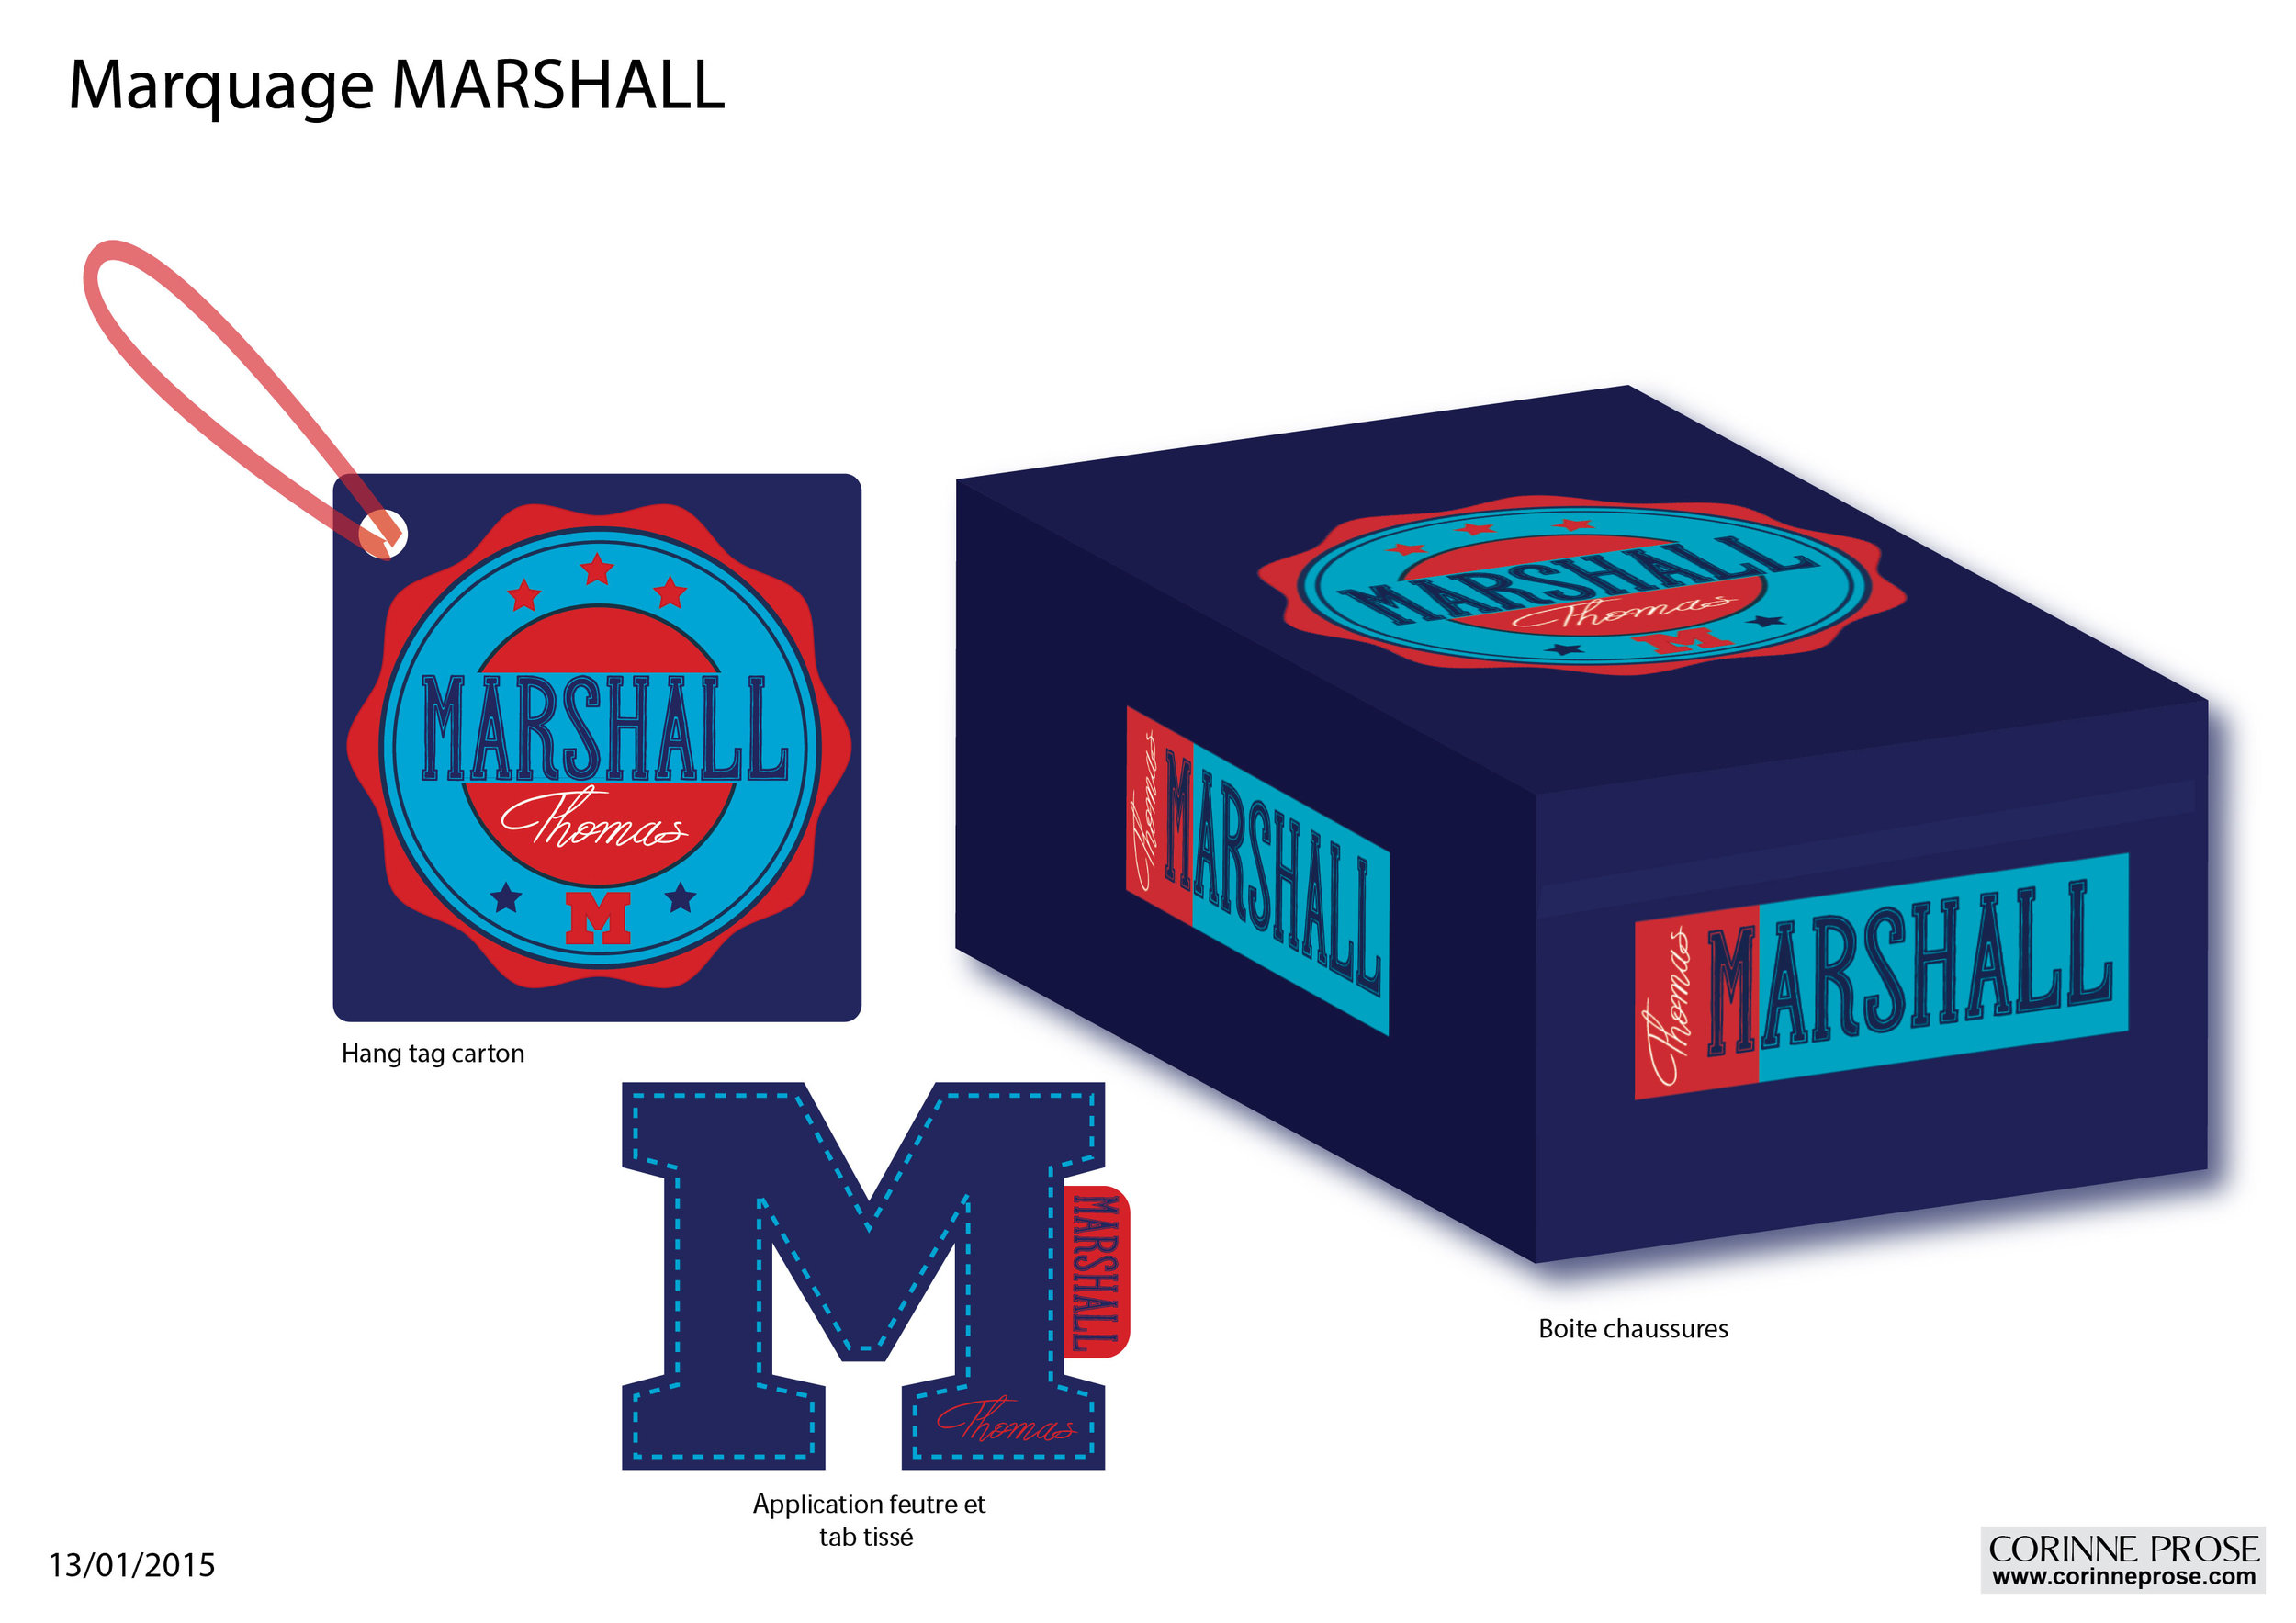 Marquage Marshall-02.jpg